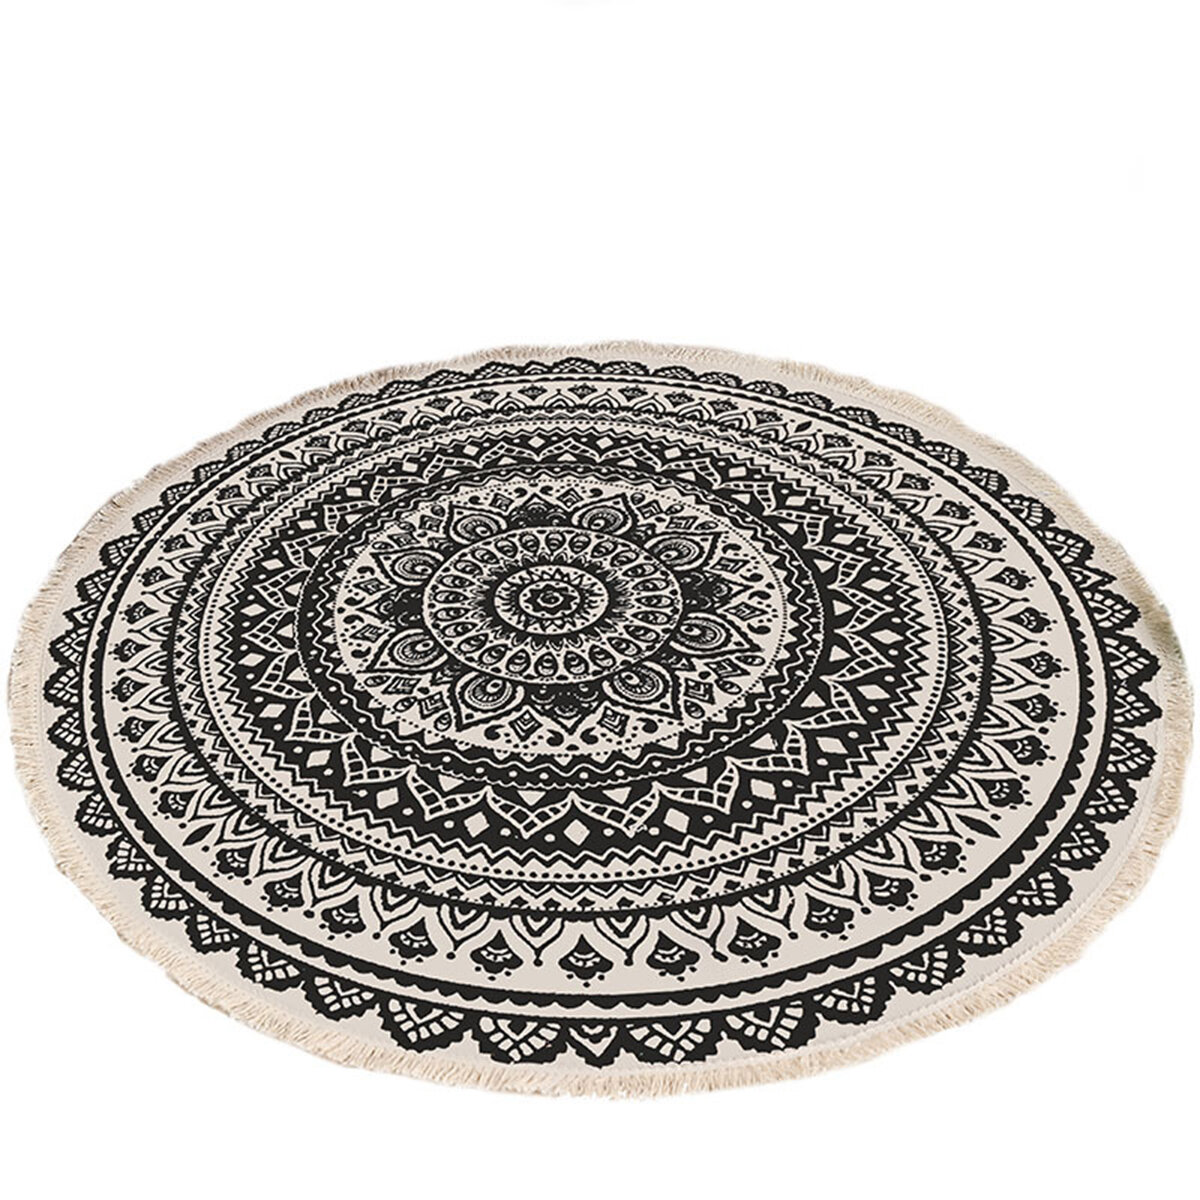 Marokko karpet ronde tapijt Boheemse stijl kwast mat deur kamer decor